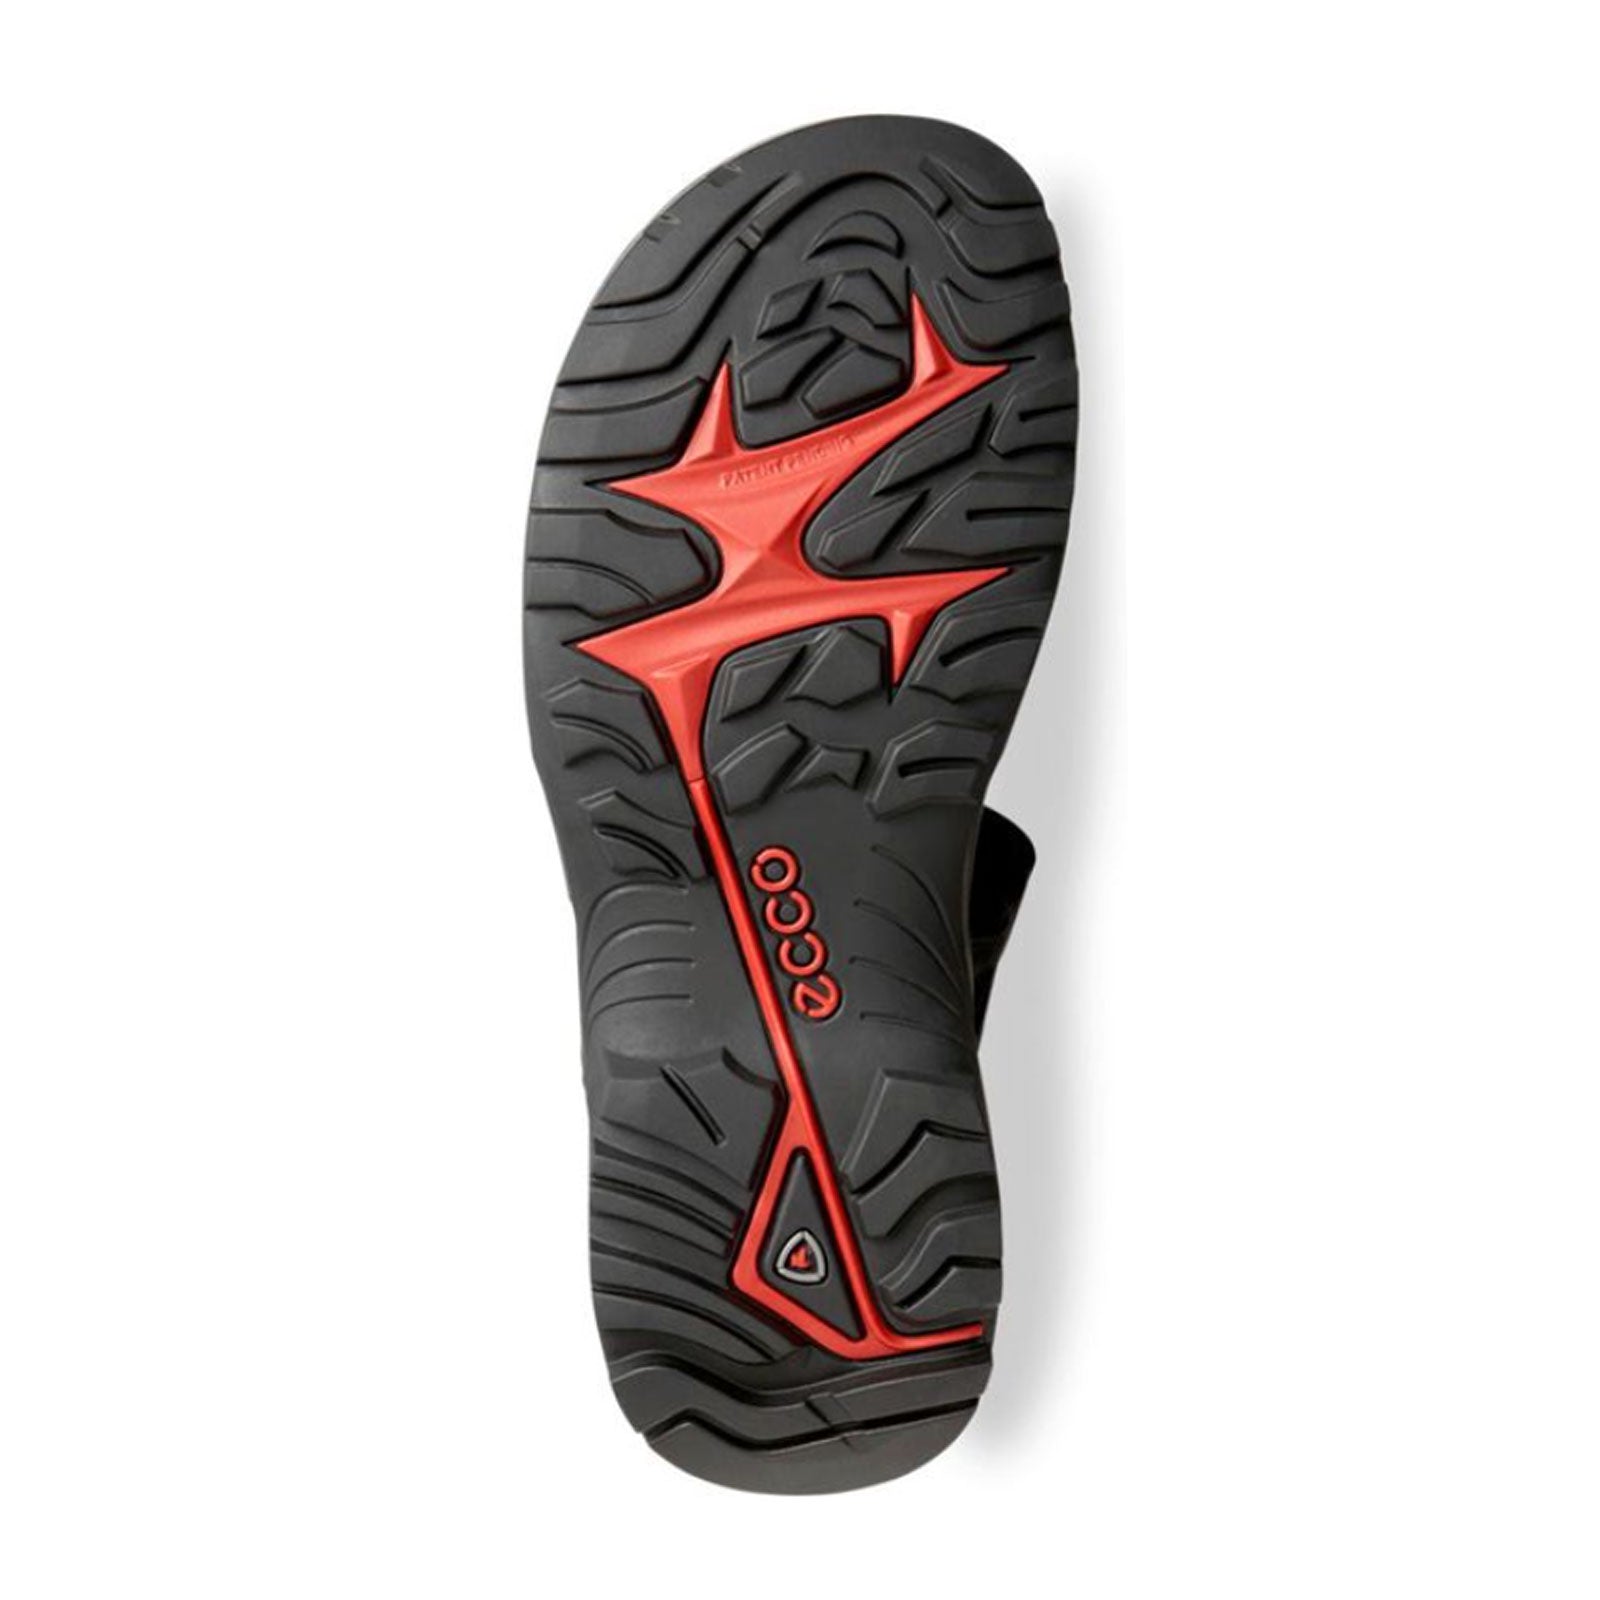 Ecco Offroad Active Sandal (Men) - - The Heel Shoe Fitters